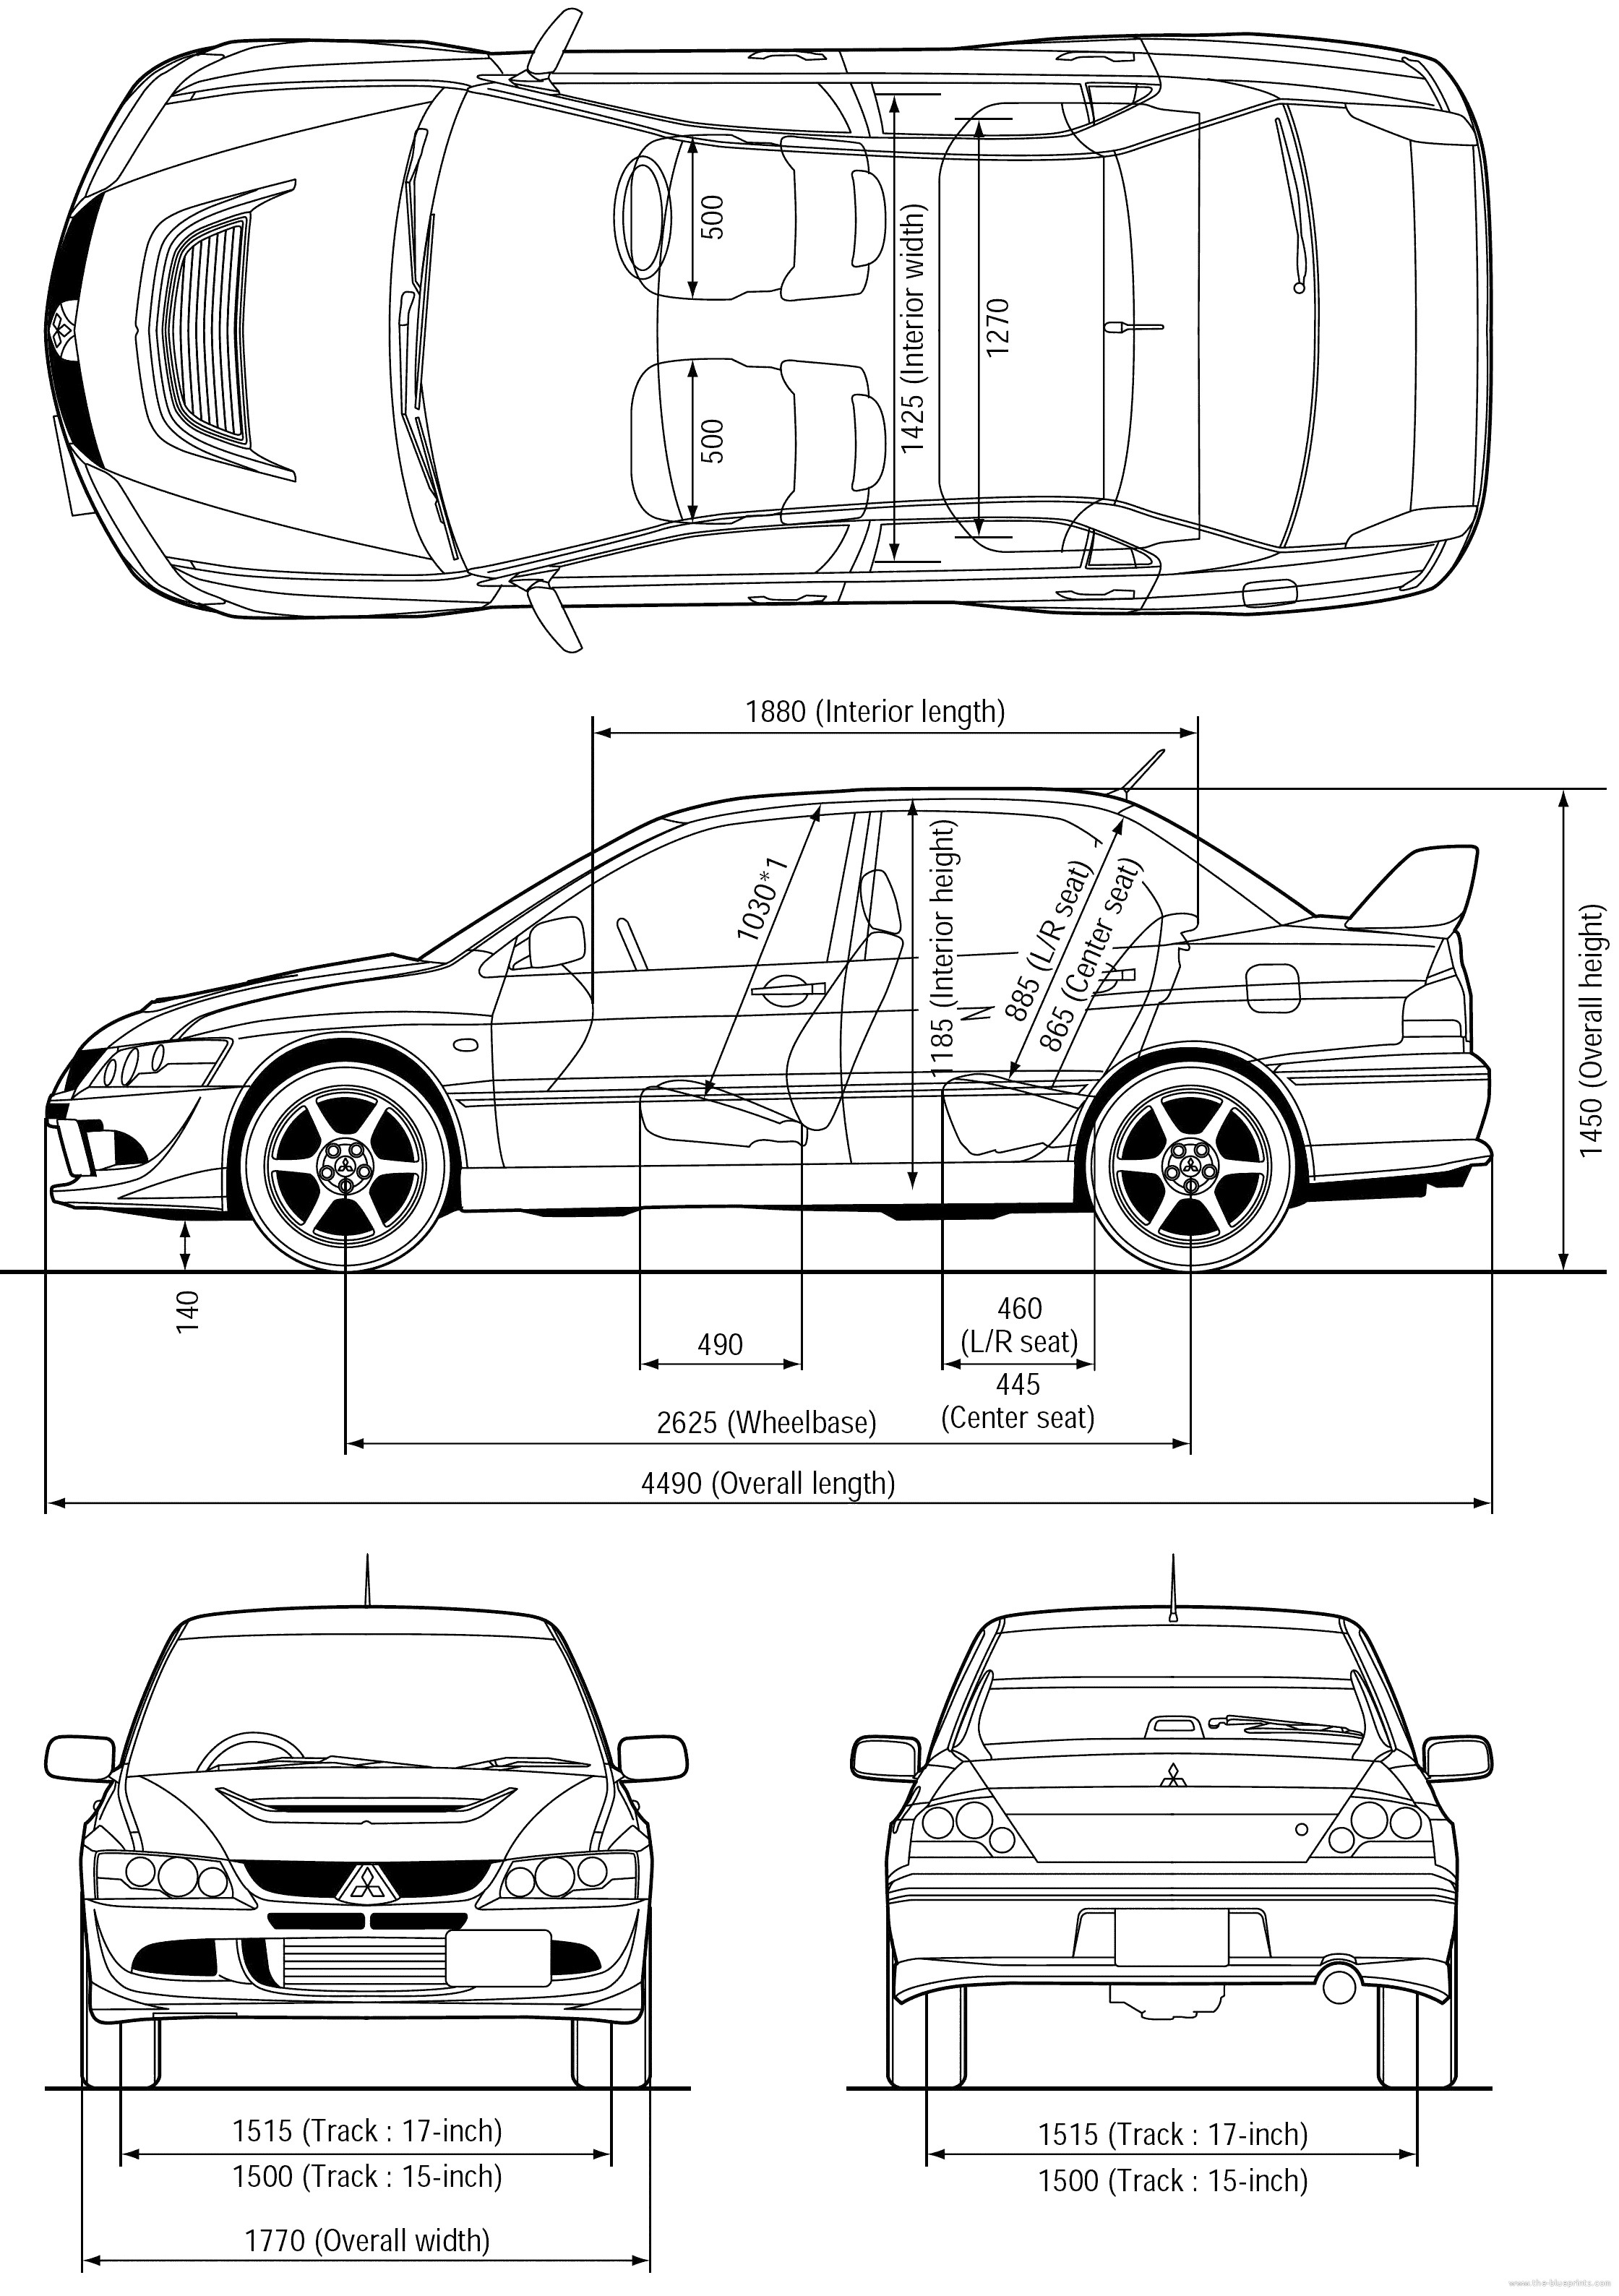 Diagram Of Car Under Hood 2008 Bmw 1 Series E81 116i Hatchback Blueprint Of Diagram Of Car Under Hood